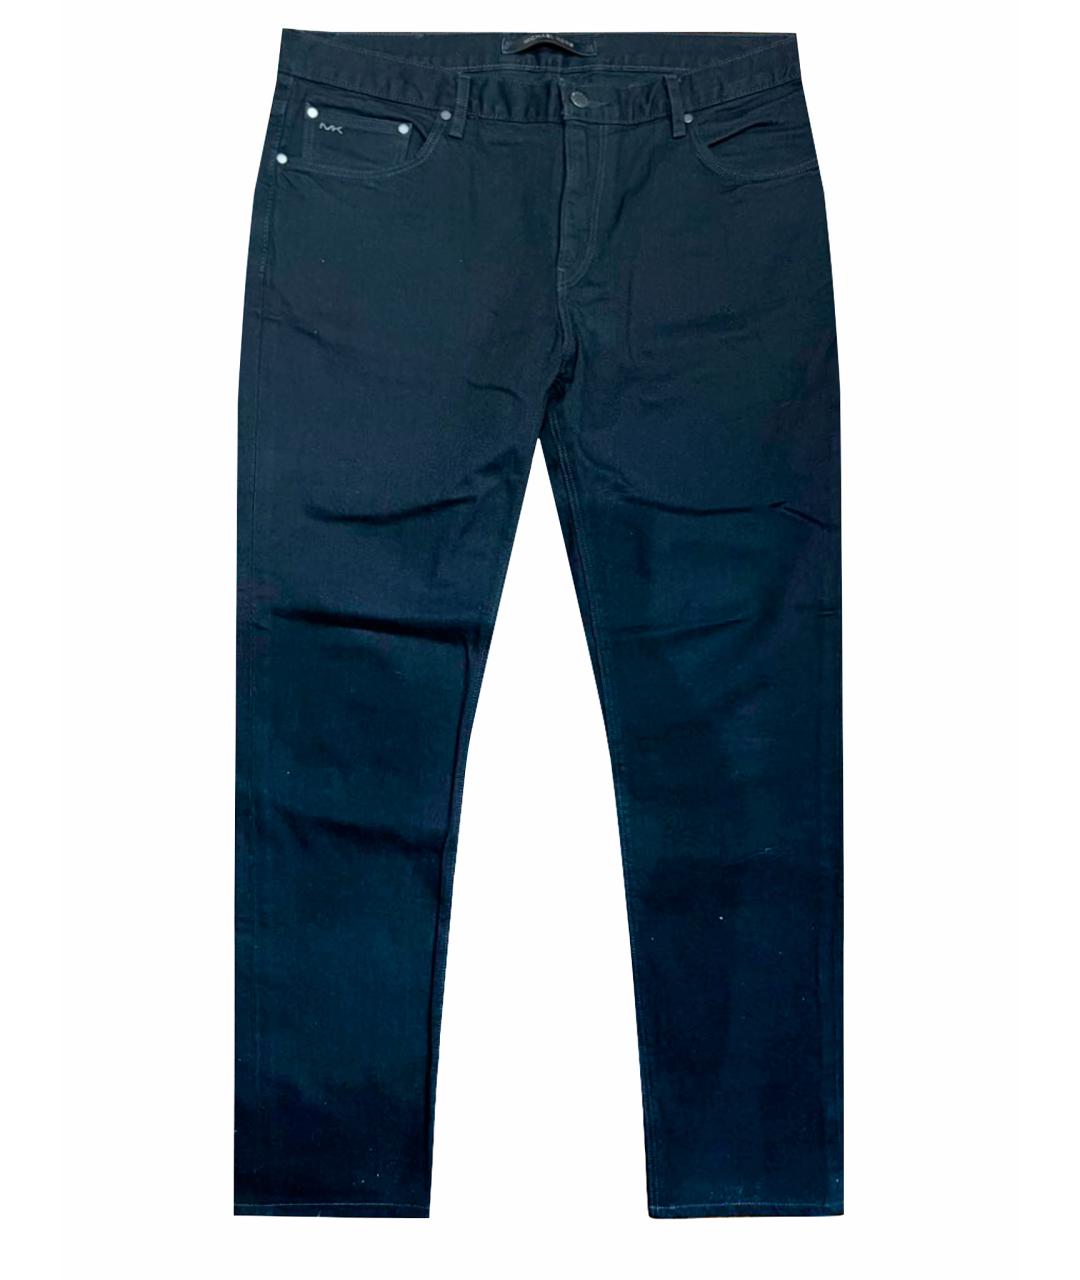 MICHAEL KORS Черные хлопковые джинсы скинни, фото 1